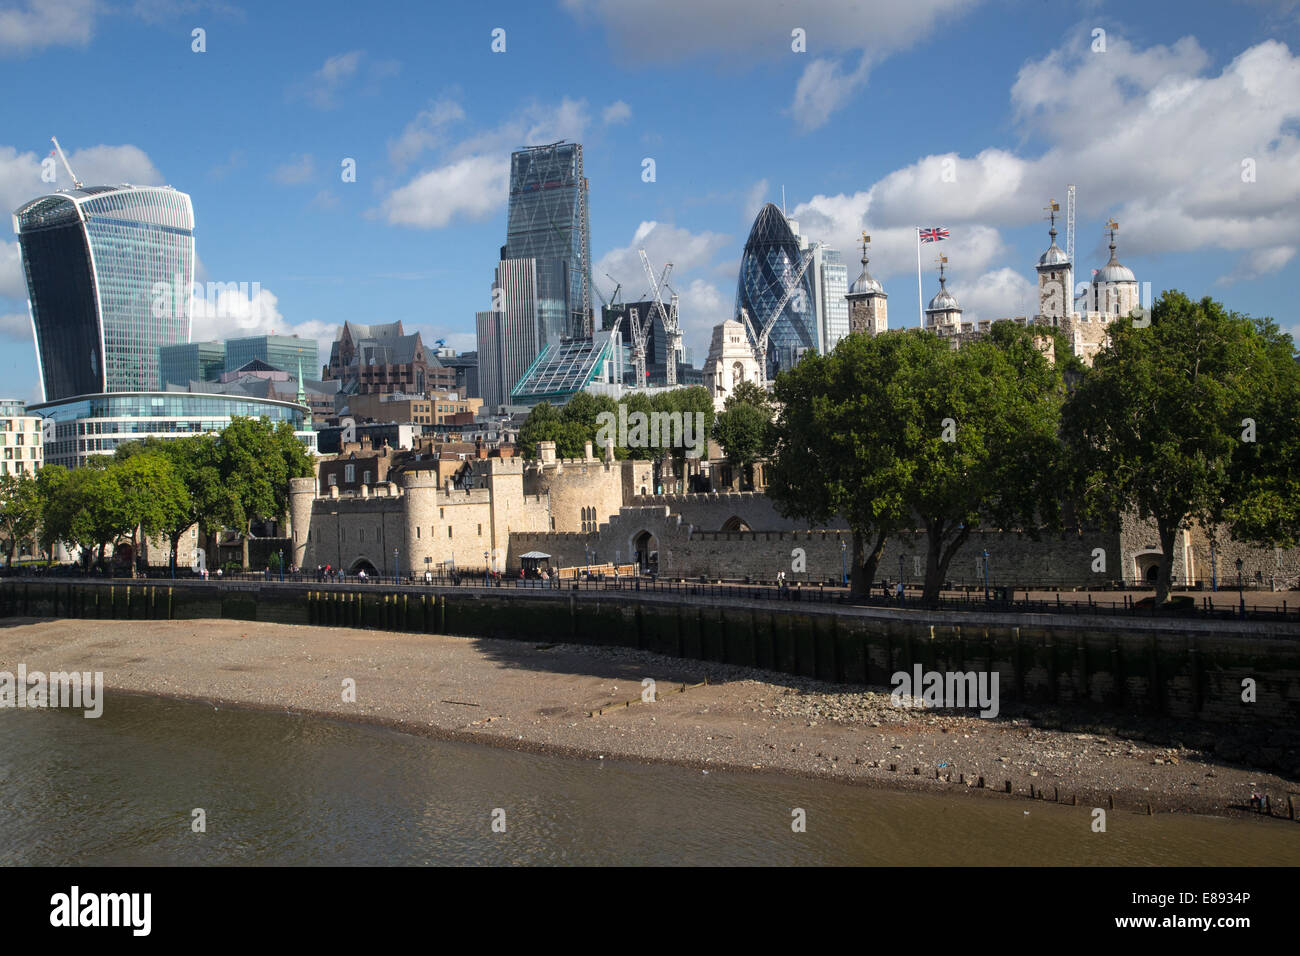 Ansicht der City of London mit dem Walkie-Talkie, die Gurke, Cheesegrater und den Tower of London Stockfoto